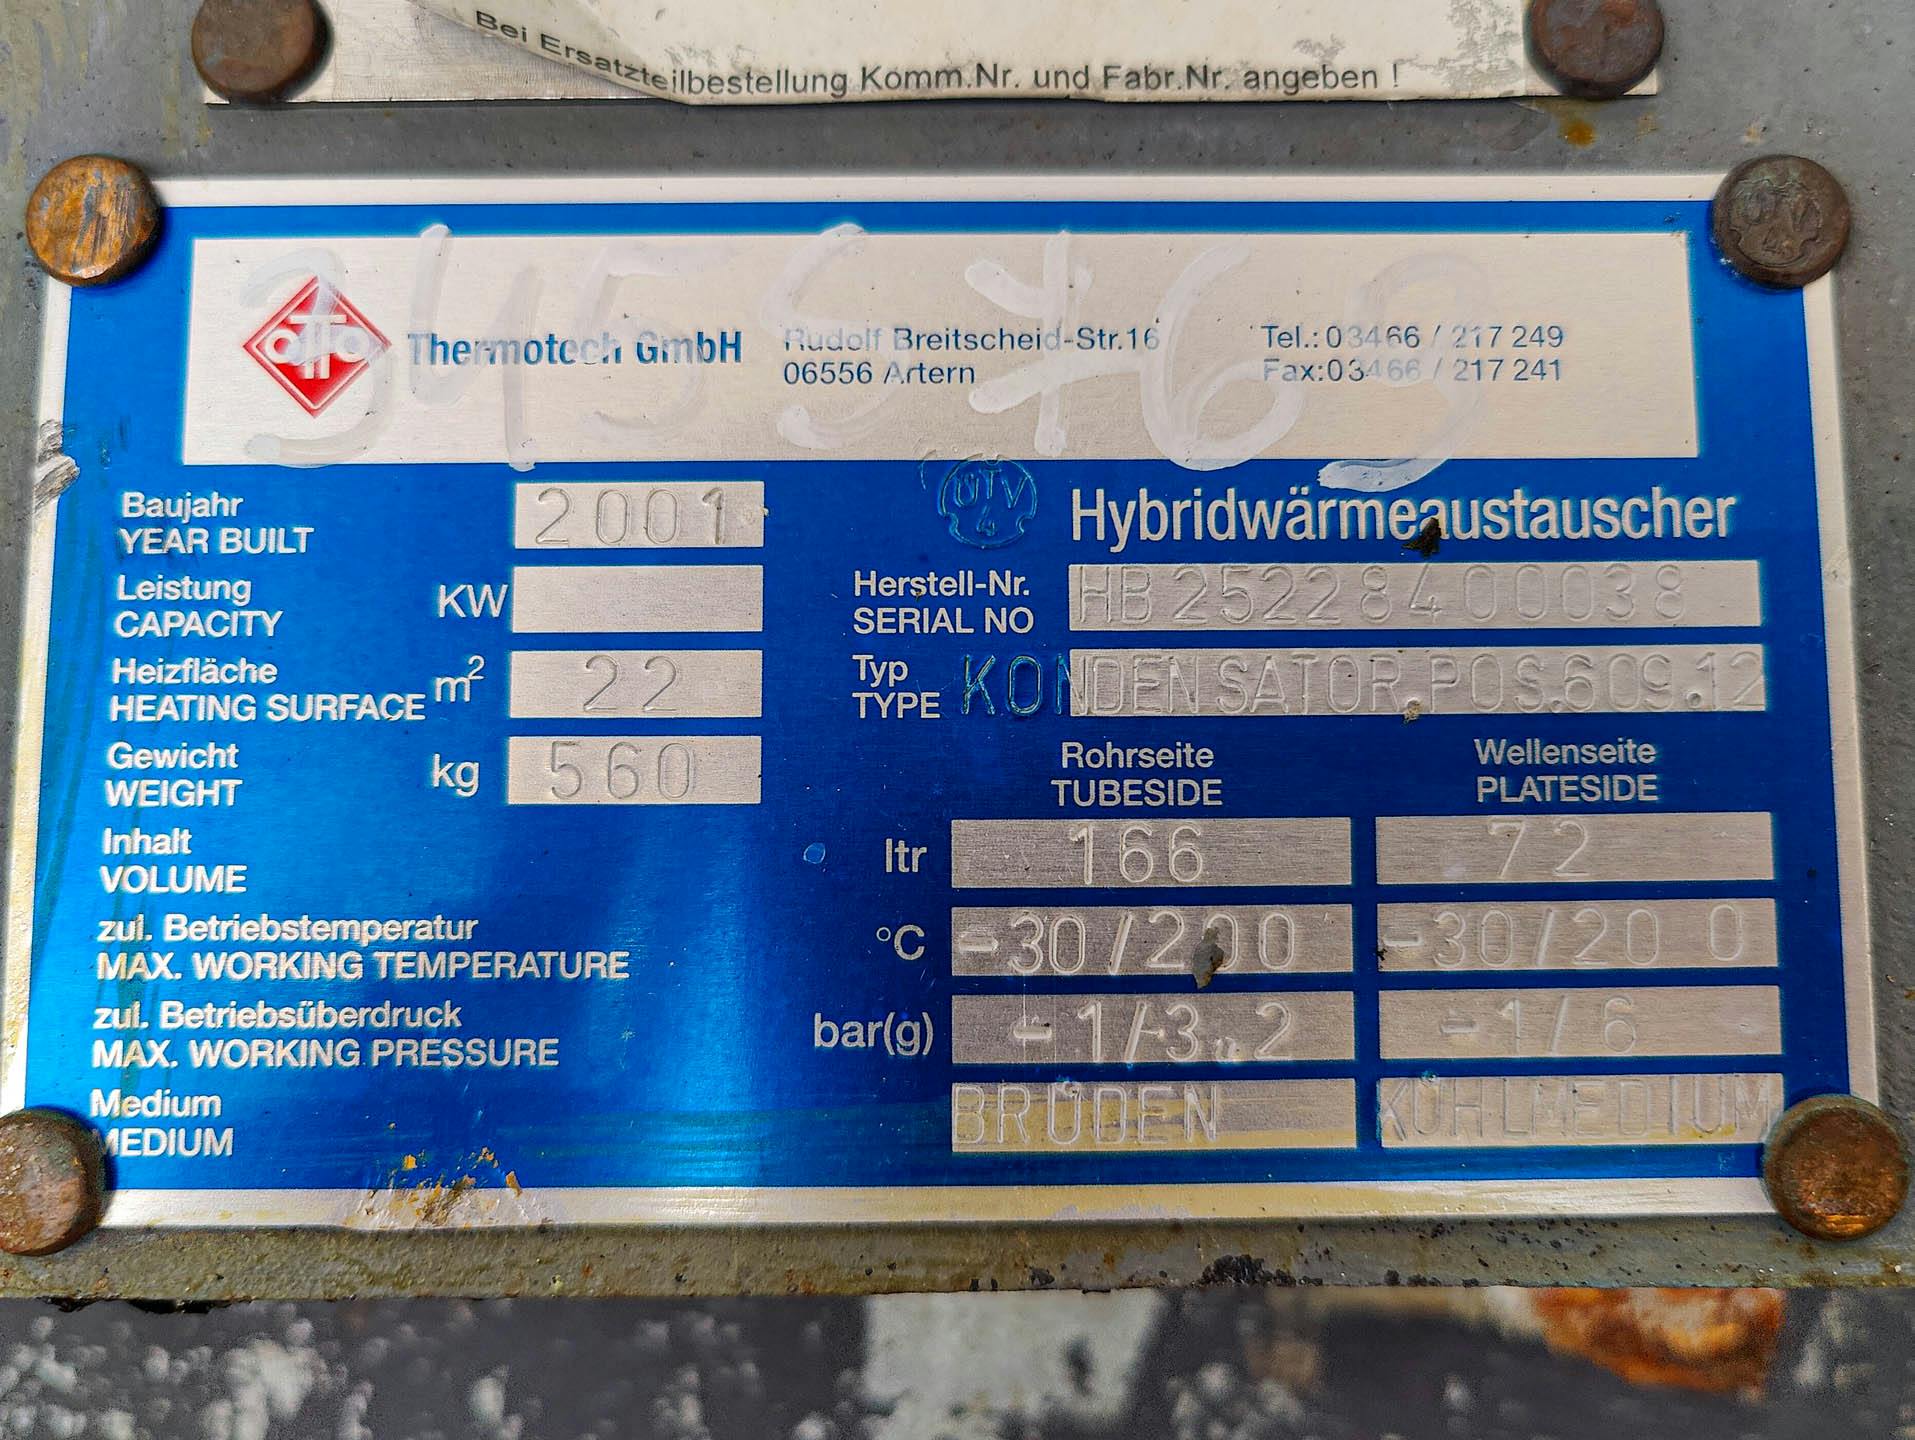 Unex Hybrid; fully welded plate heat exchanger - Echangeur de chaleur à plaques - image 7